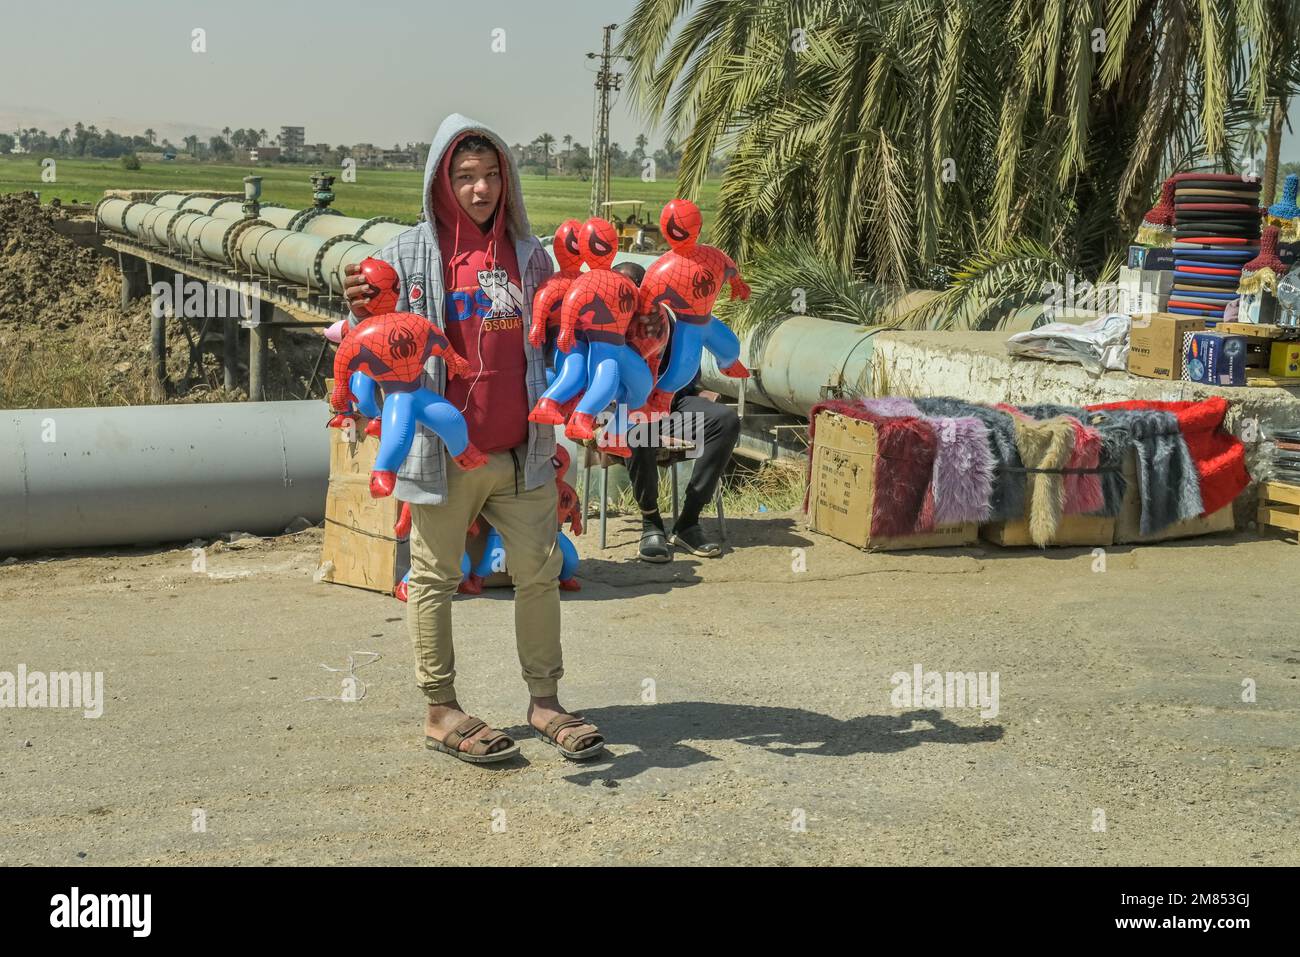 Straßenszene, Kinderarbeit, junger Mann verkauft Spiderman Figuren, Strasse 75 zwischen Luxor und Qina, Ägypten Foto de stock